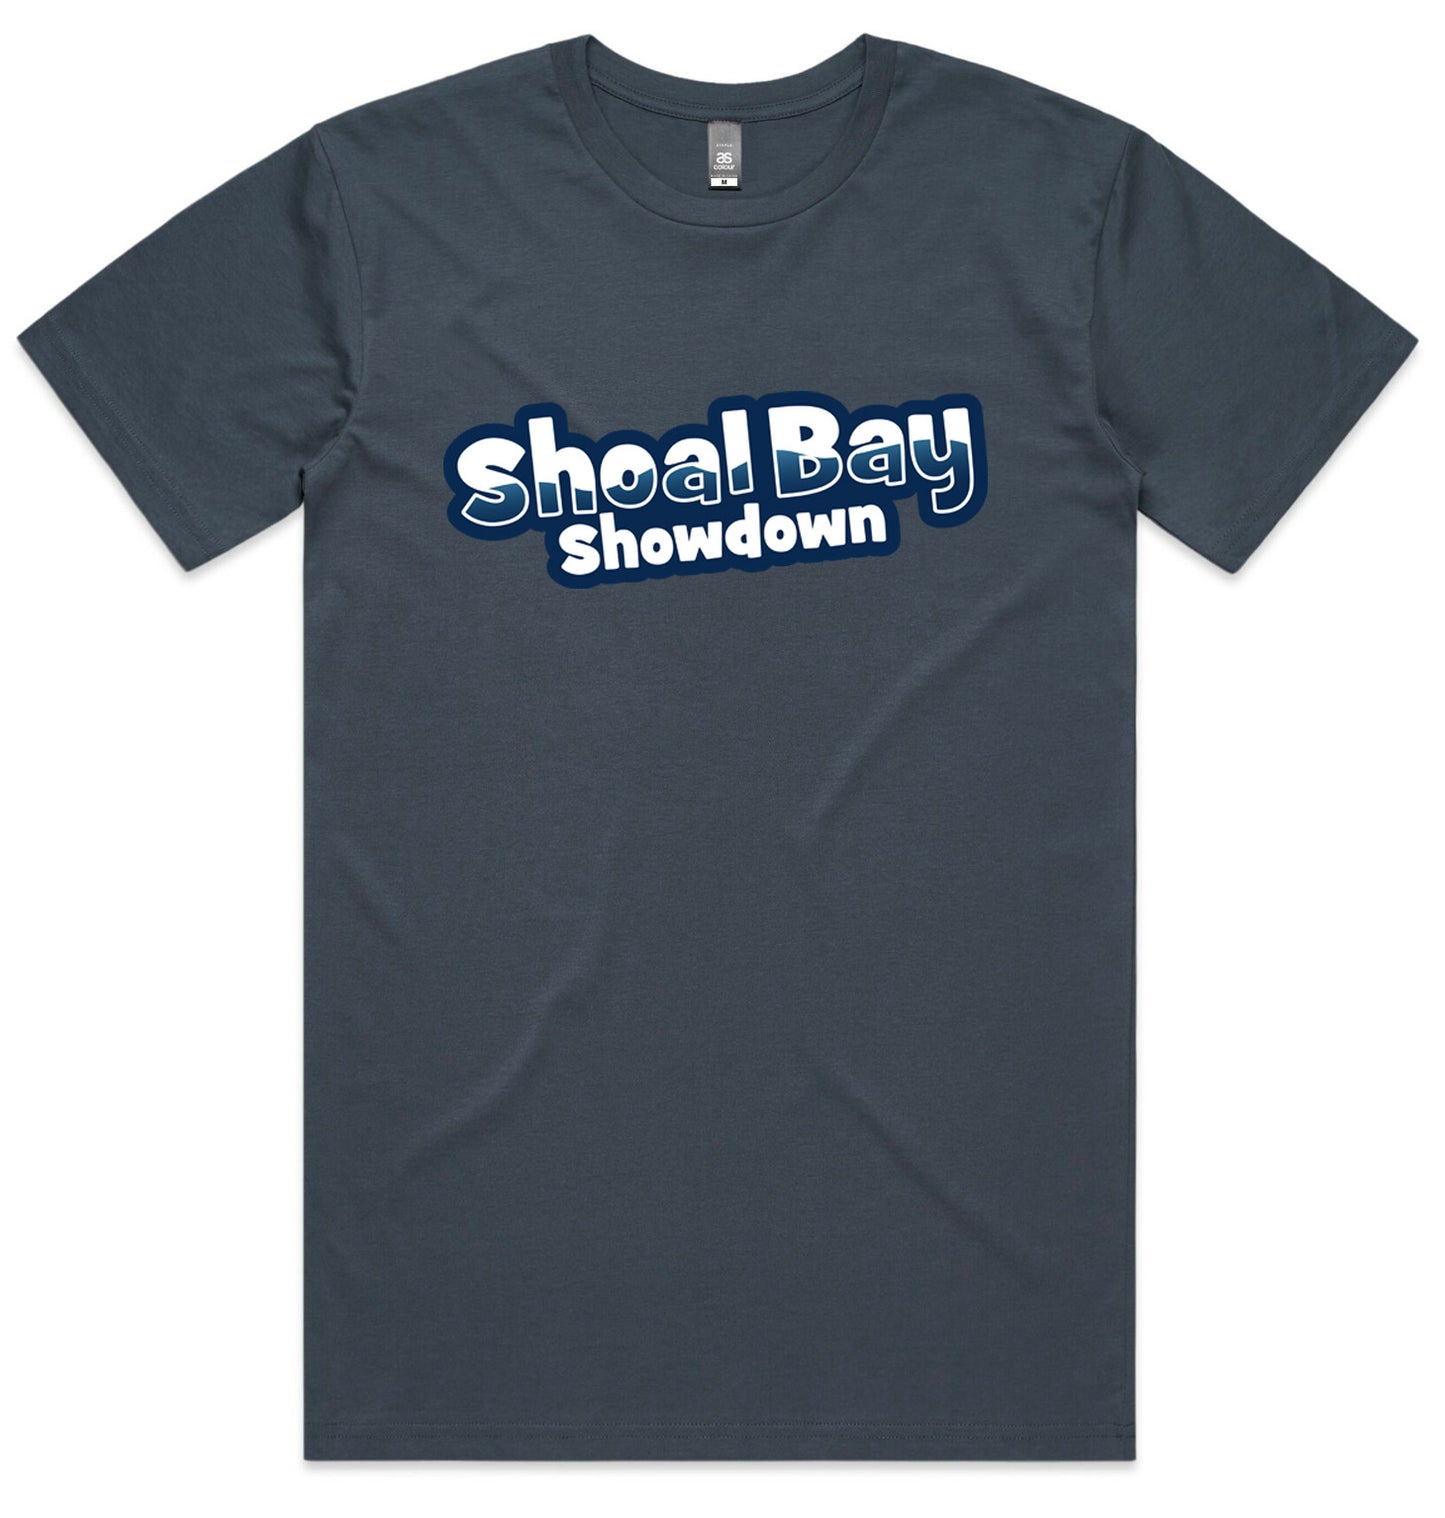 SHOAL BAY SHOWDOWN T-SHIRT